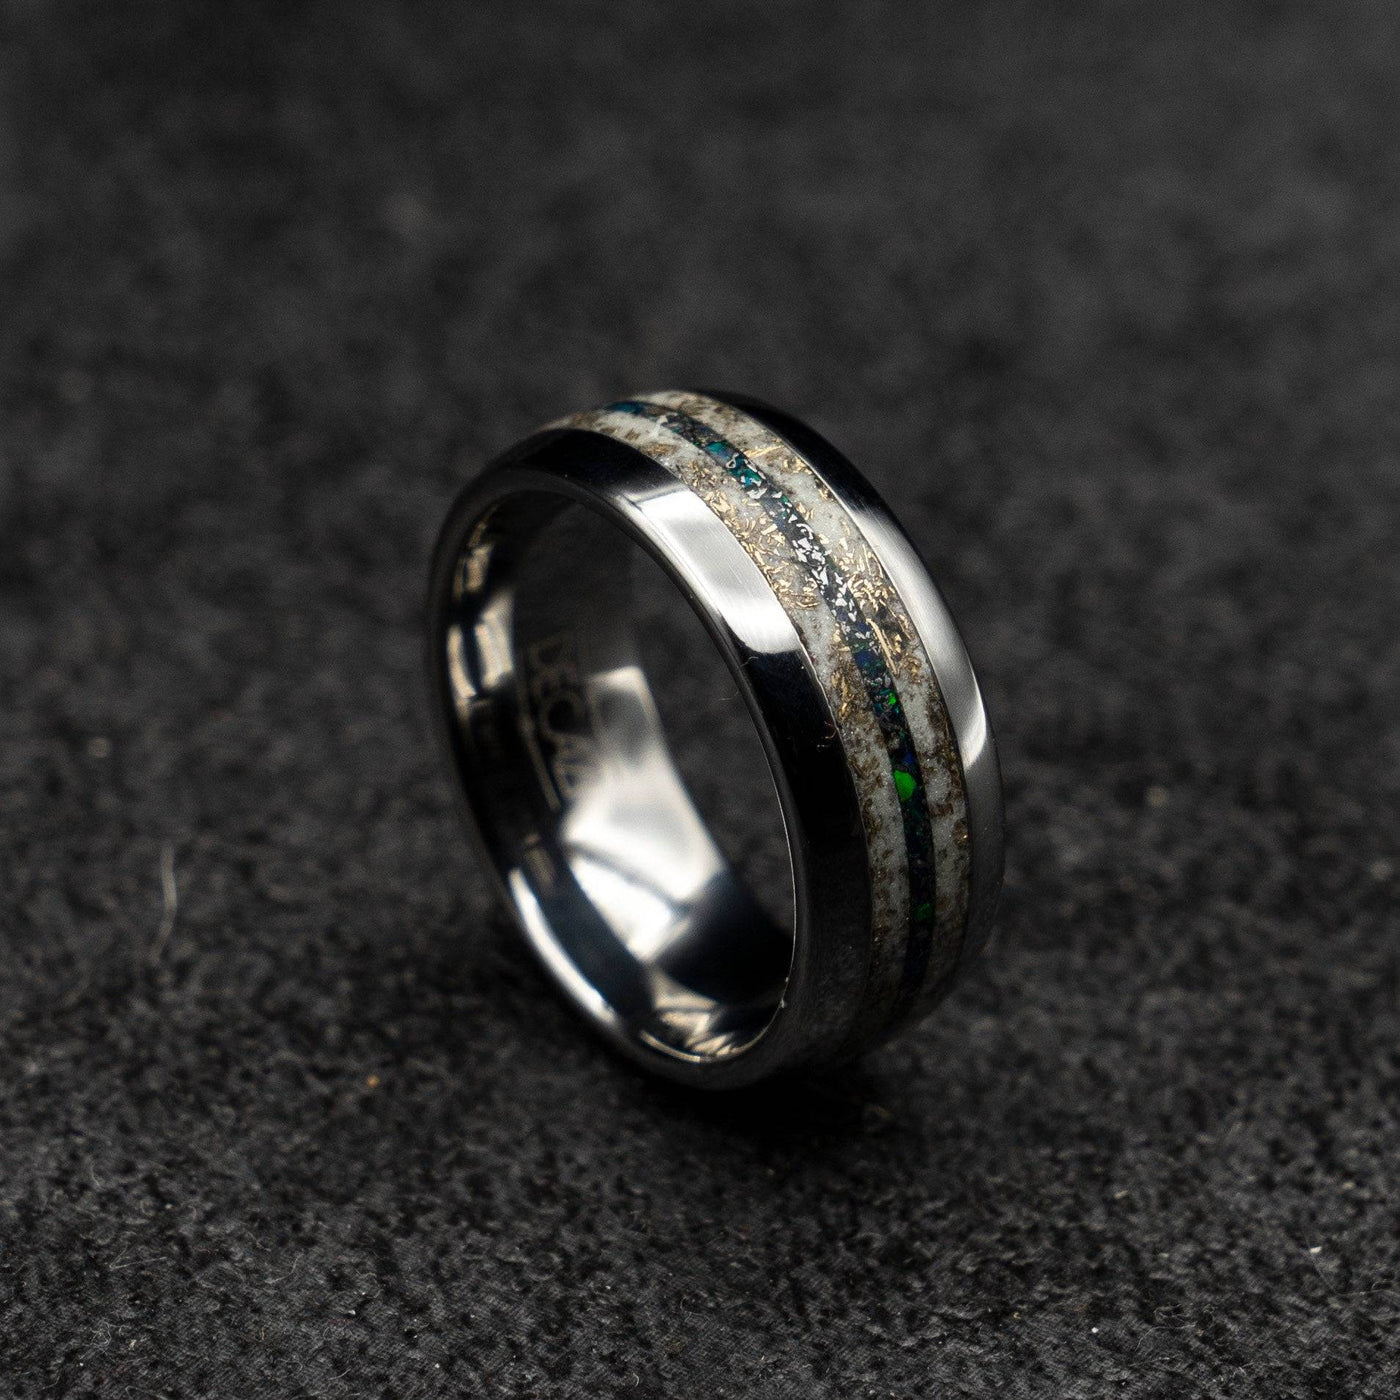 Tungsten opal, meteorite and Mokume gane glow ring | Decazi